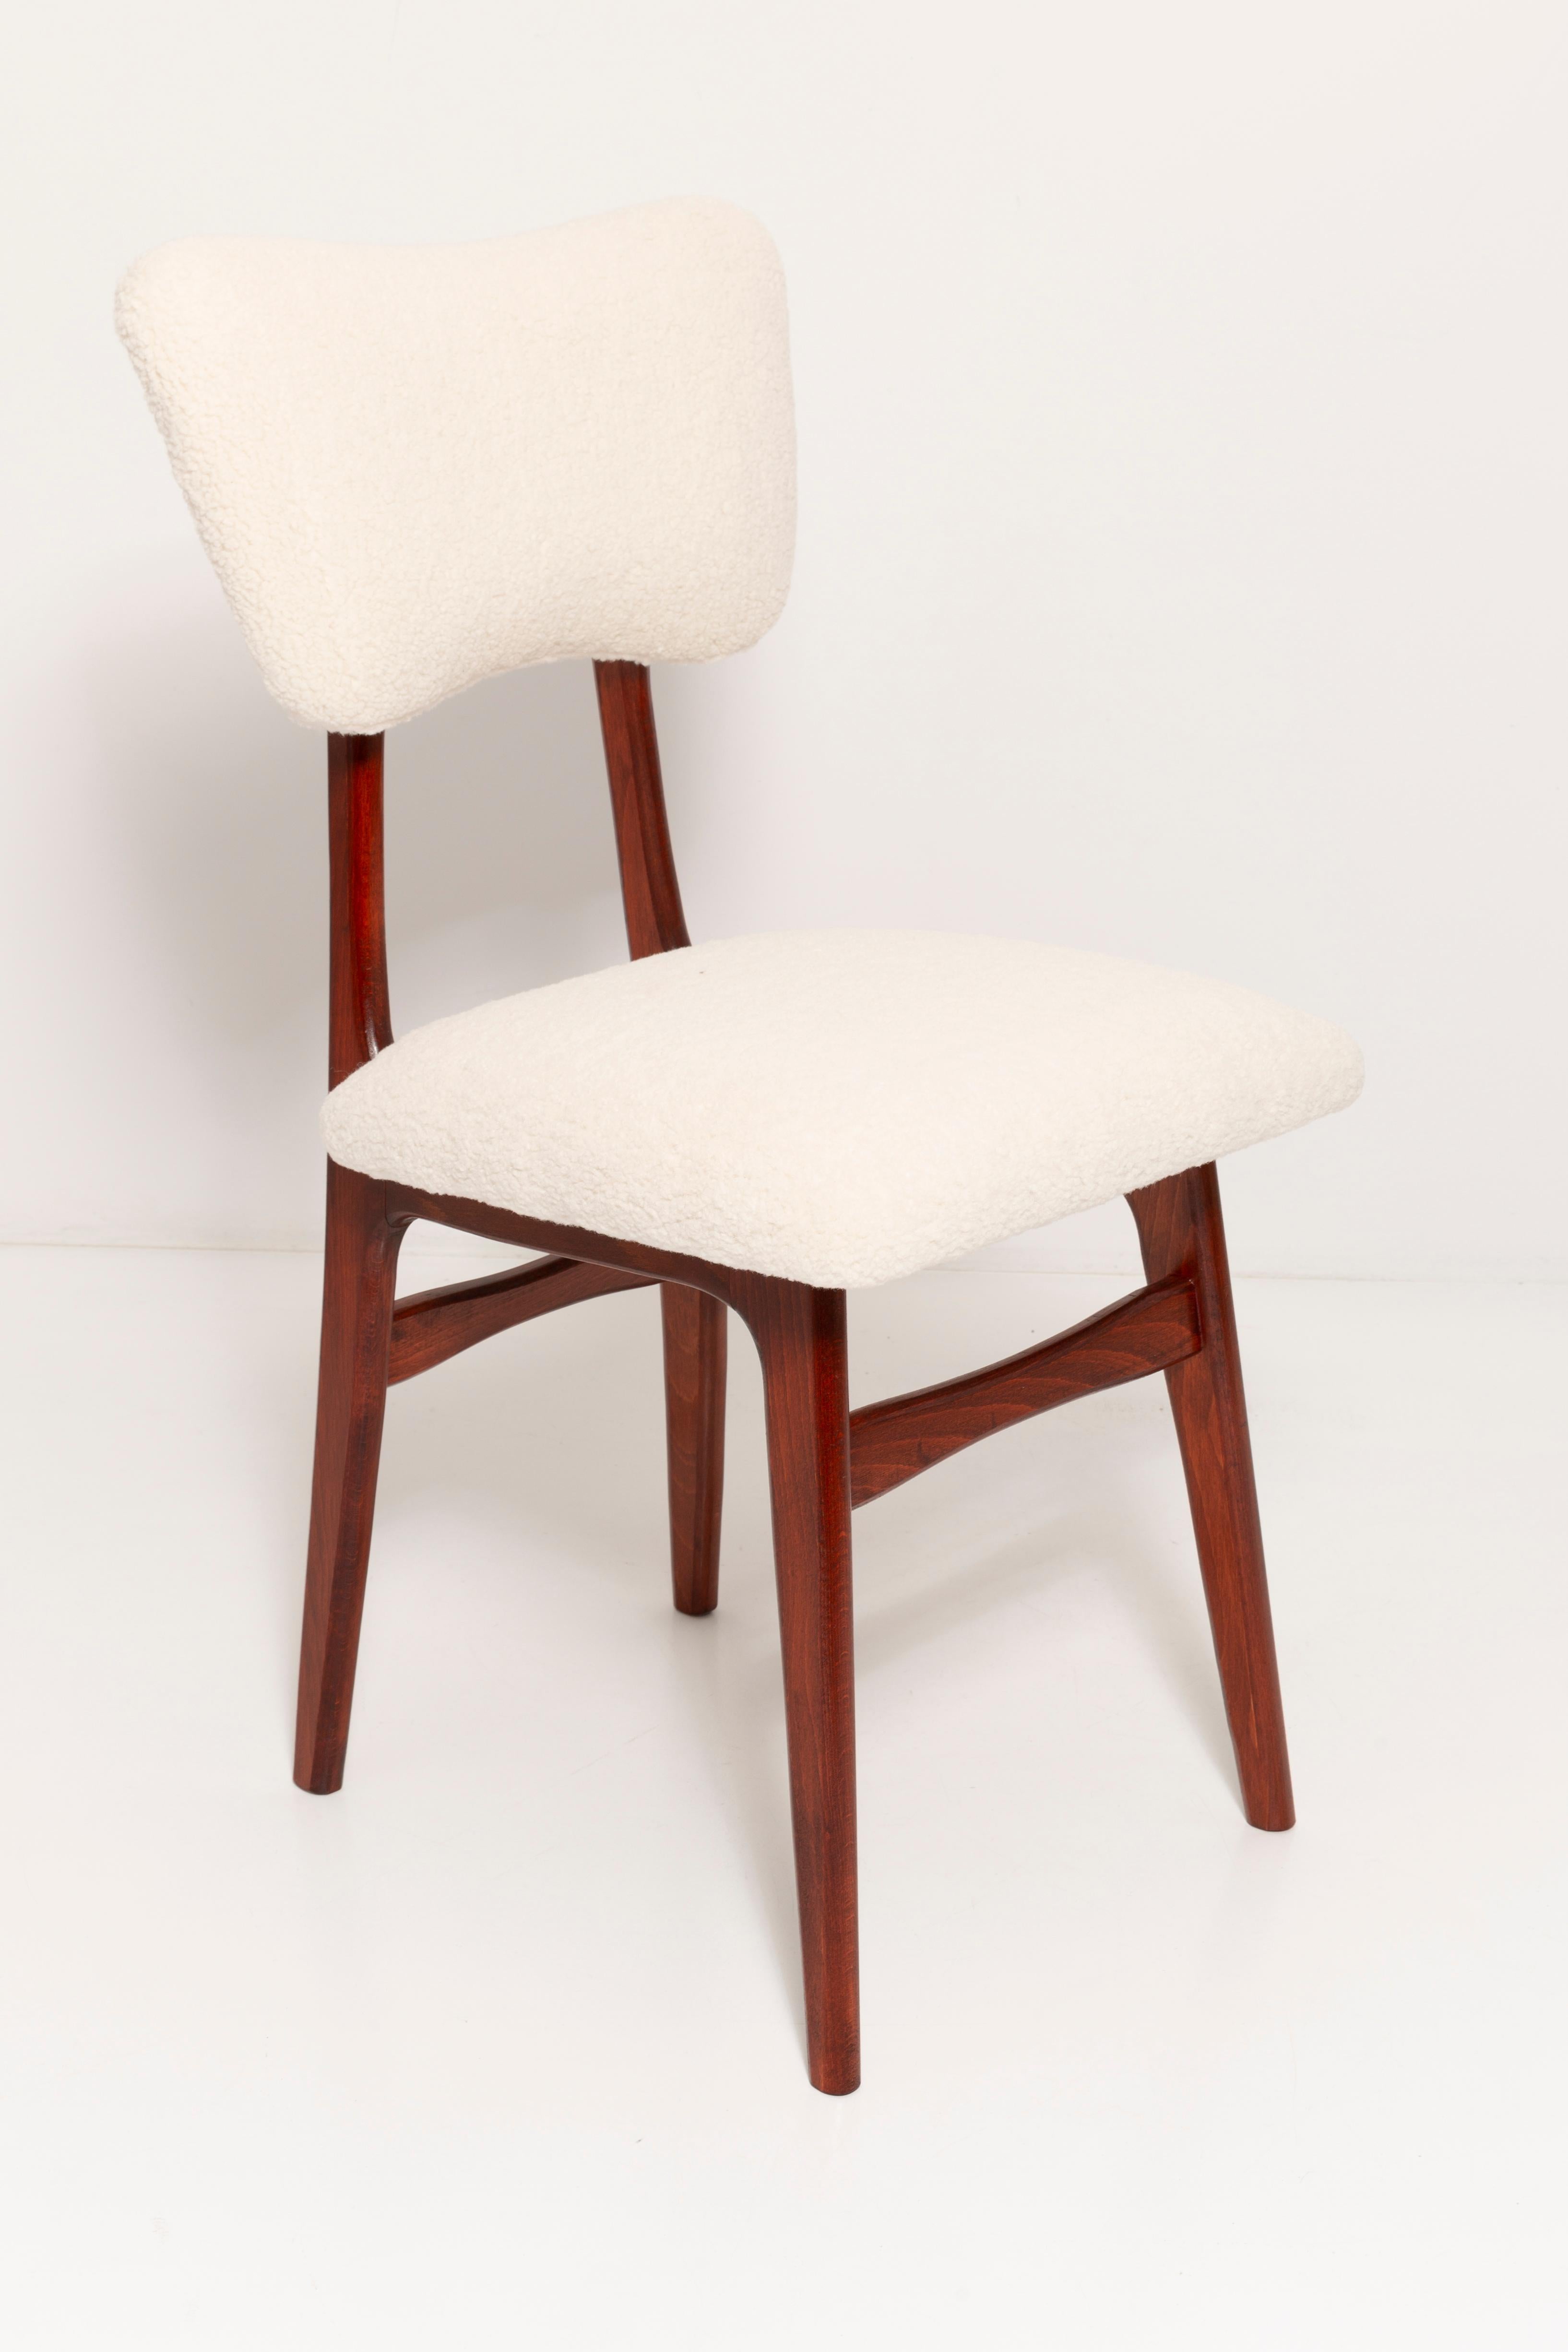 Chaises conçues par le professeur Rajmund Halas. Fabriqué en bois de hêtre. Très belle forme originale de type papillon. Les chaises ont été entièrement rénovées et les boiseries ont été rafraîchies et peintes en laque de cerisier. L'assise et le